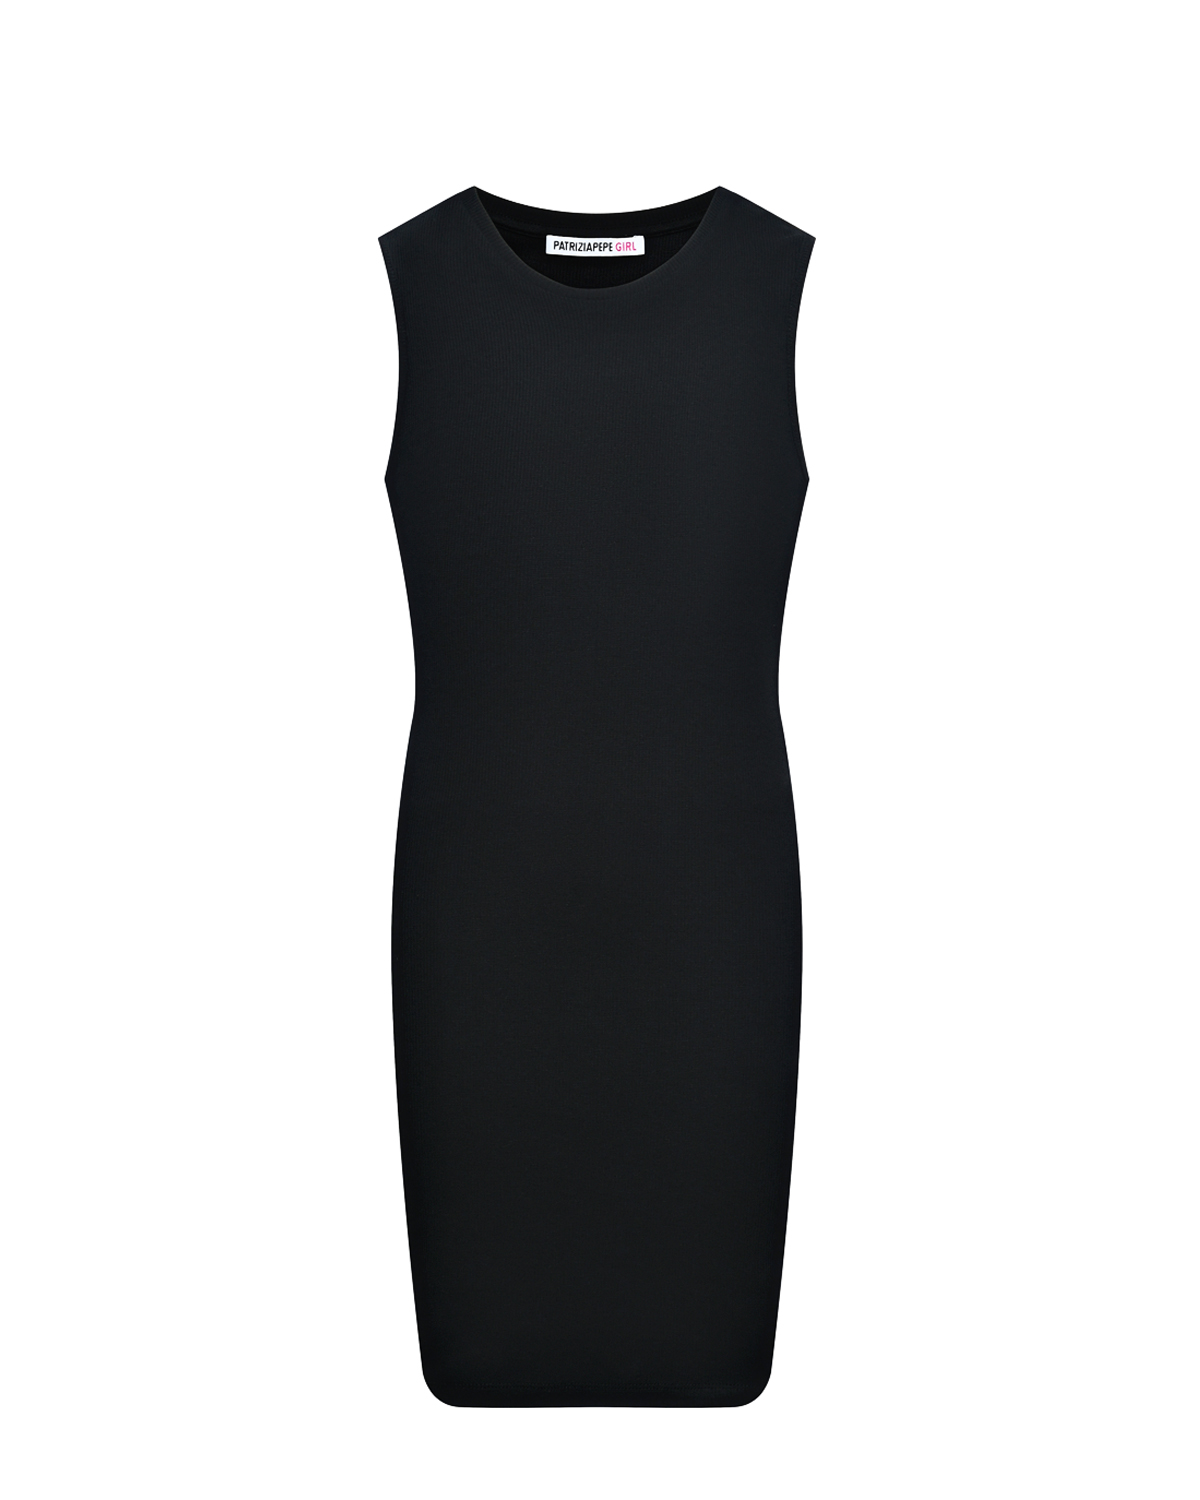 Платье с вырезами по бокам, черное Patrizia Pepe, размер 164, цвет нет цвета - фото 1